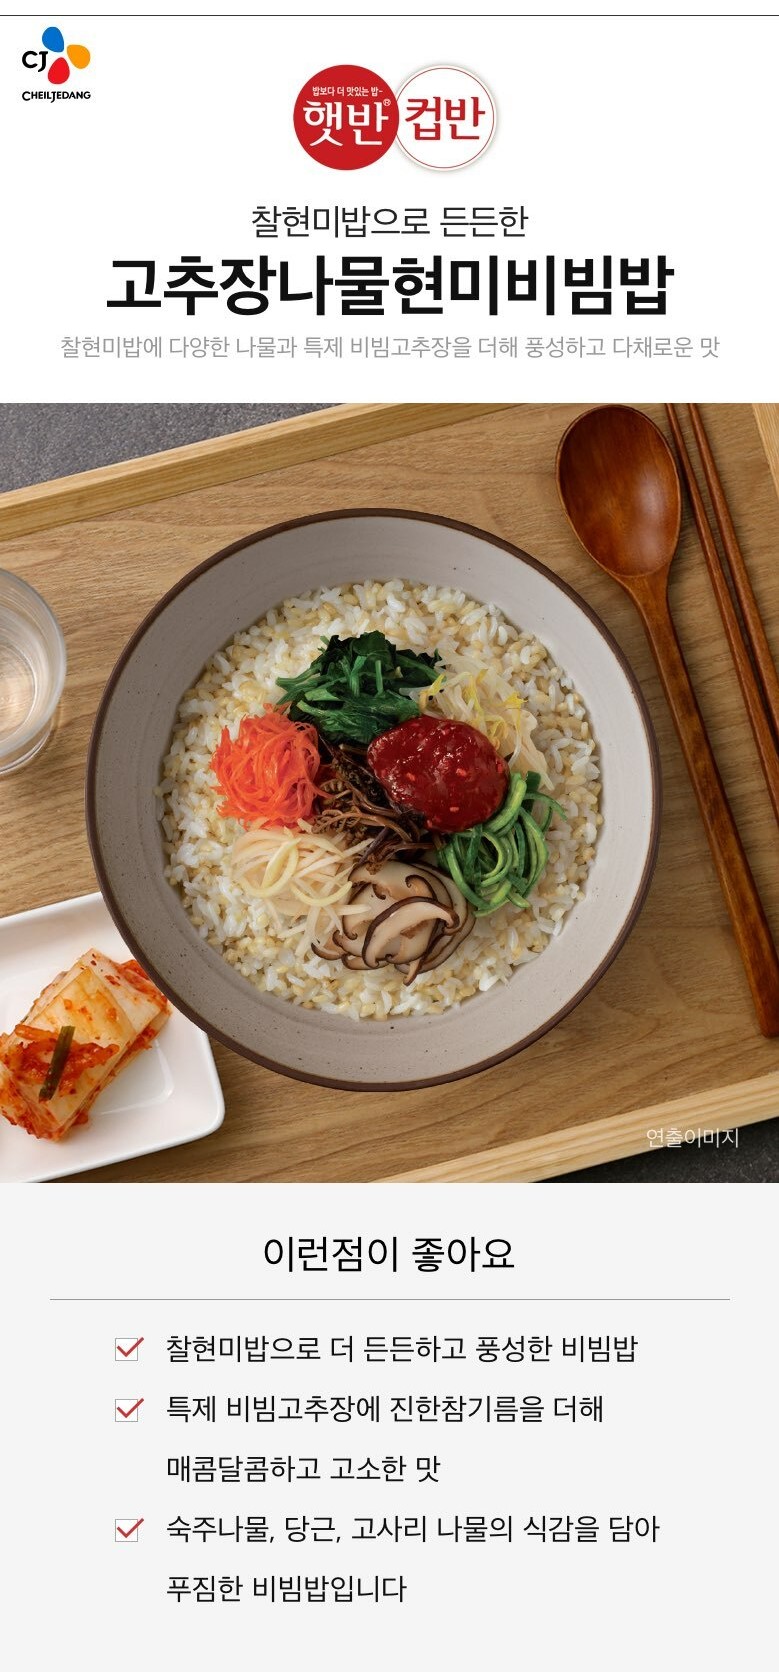 韓國食品-[CJ] 컵반 (고추장나물현미비빔밥) 229g